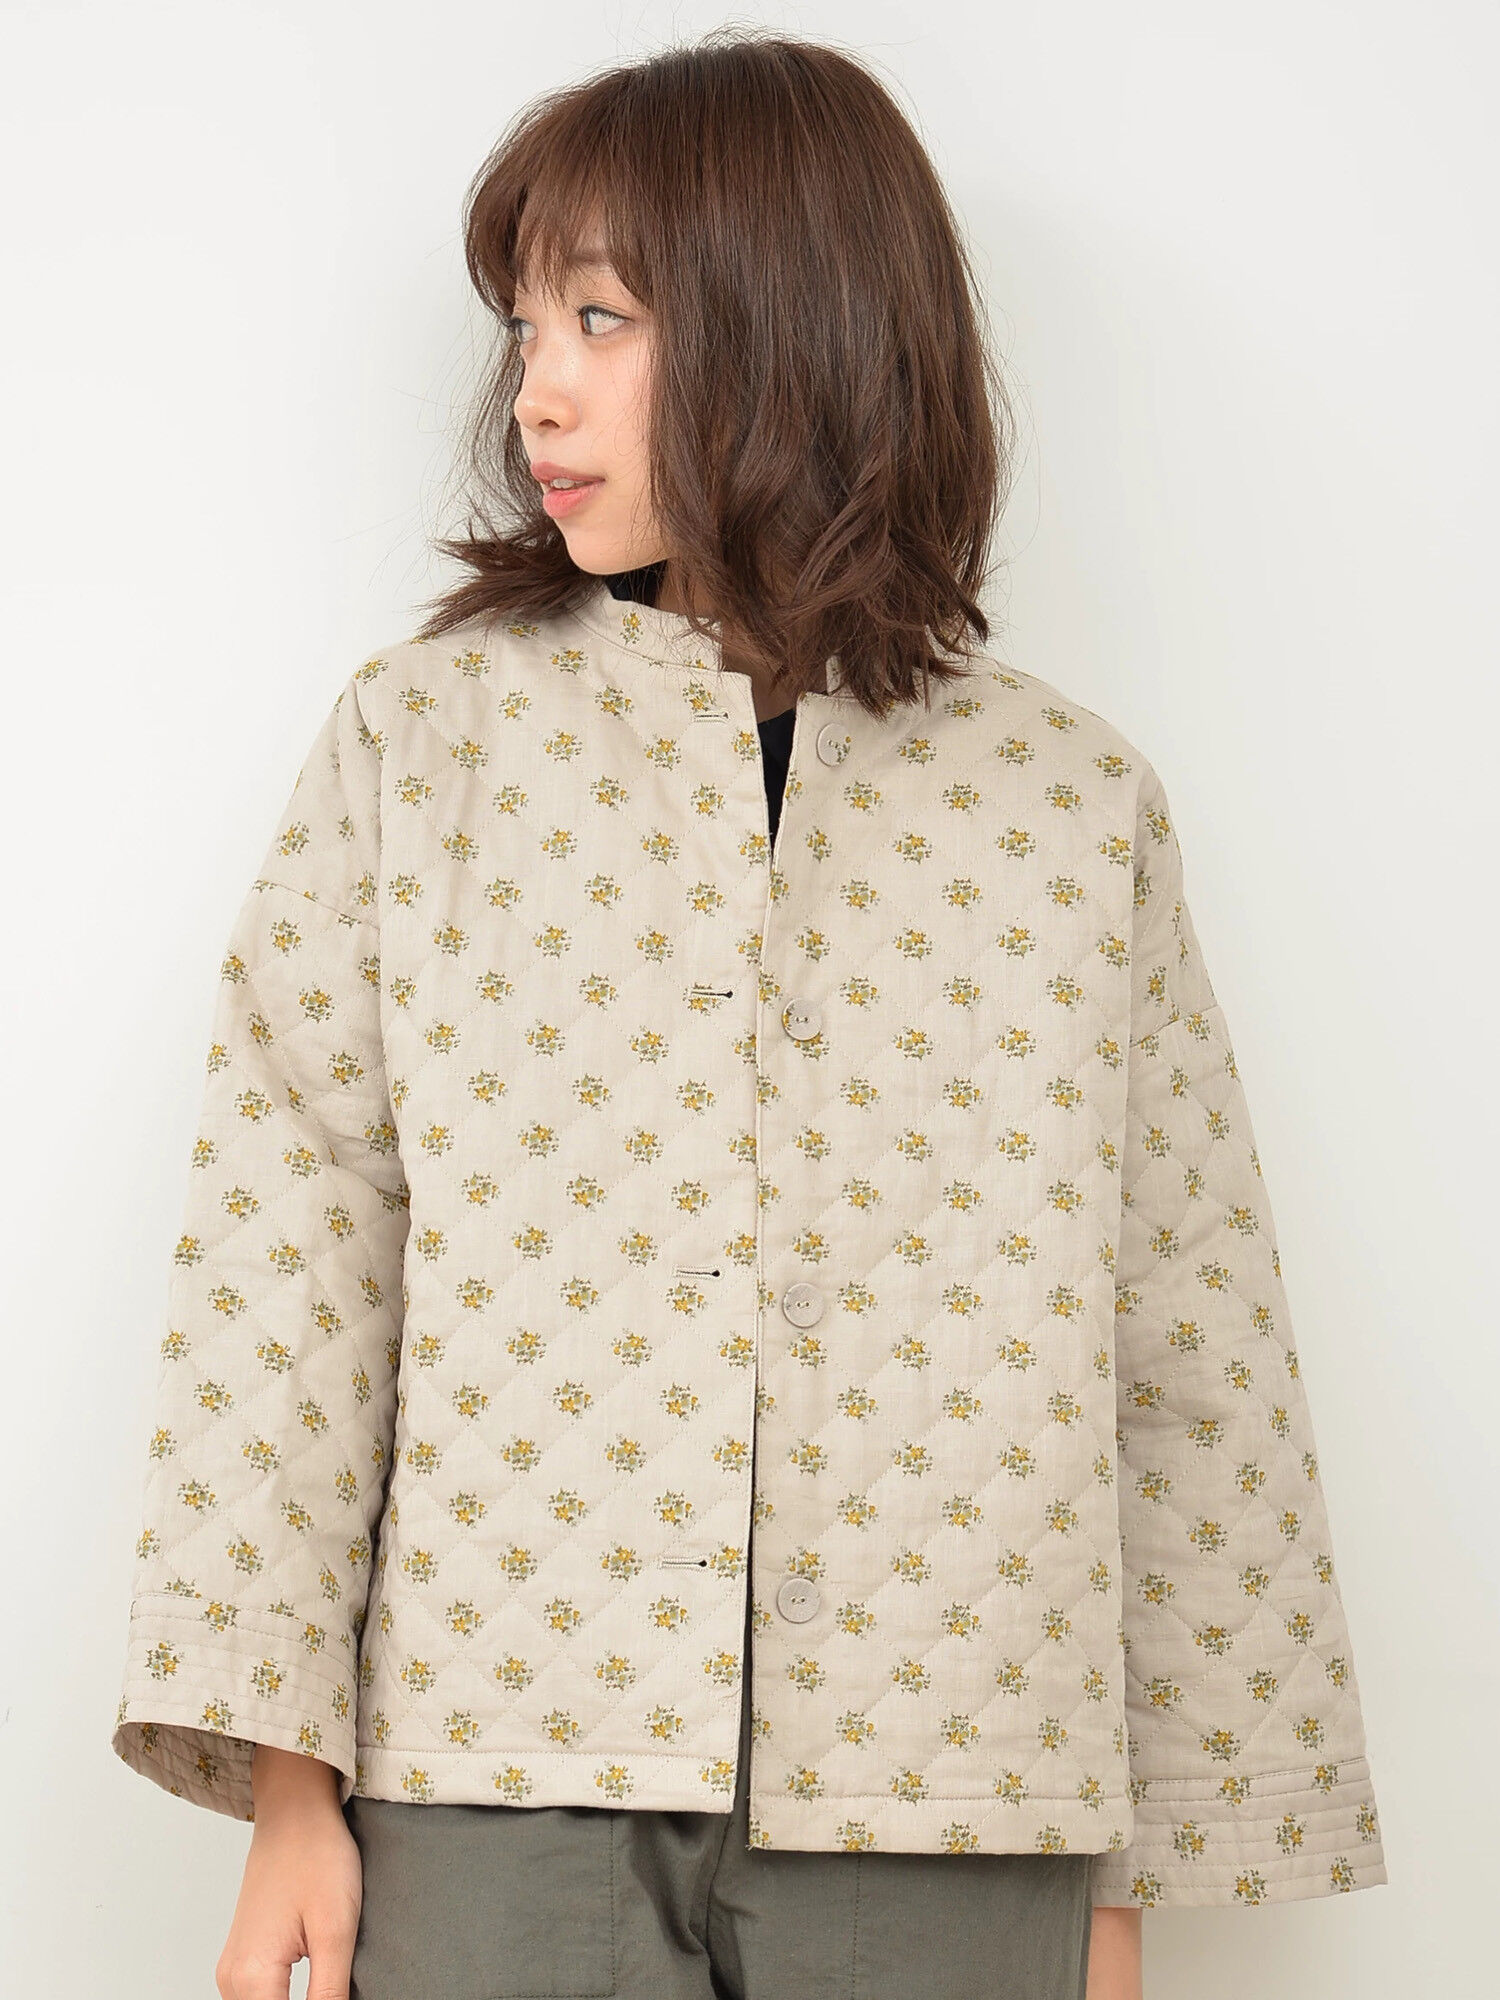 小花柄キルトブルゾン / Samansa Mos2(サマンサモスモス)のジャケット ファッション通販のSTRIPE CLUB